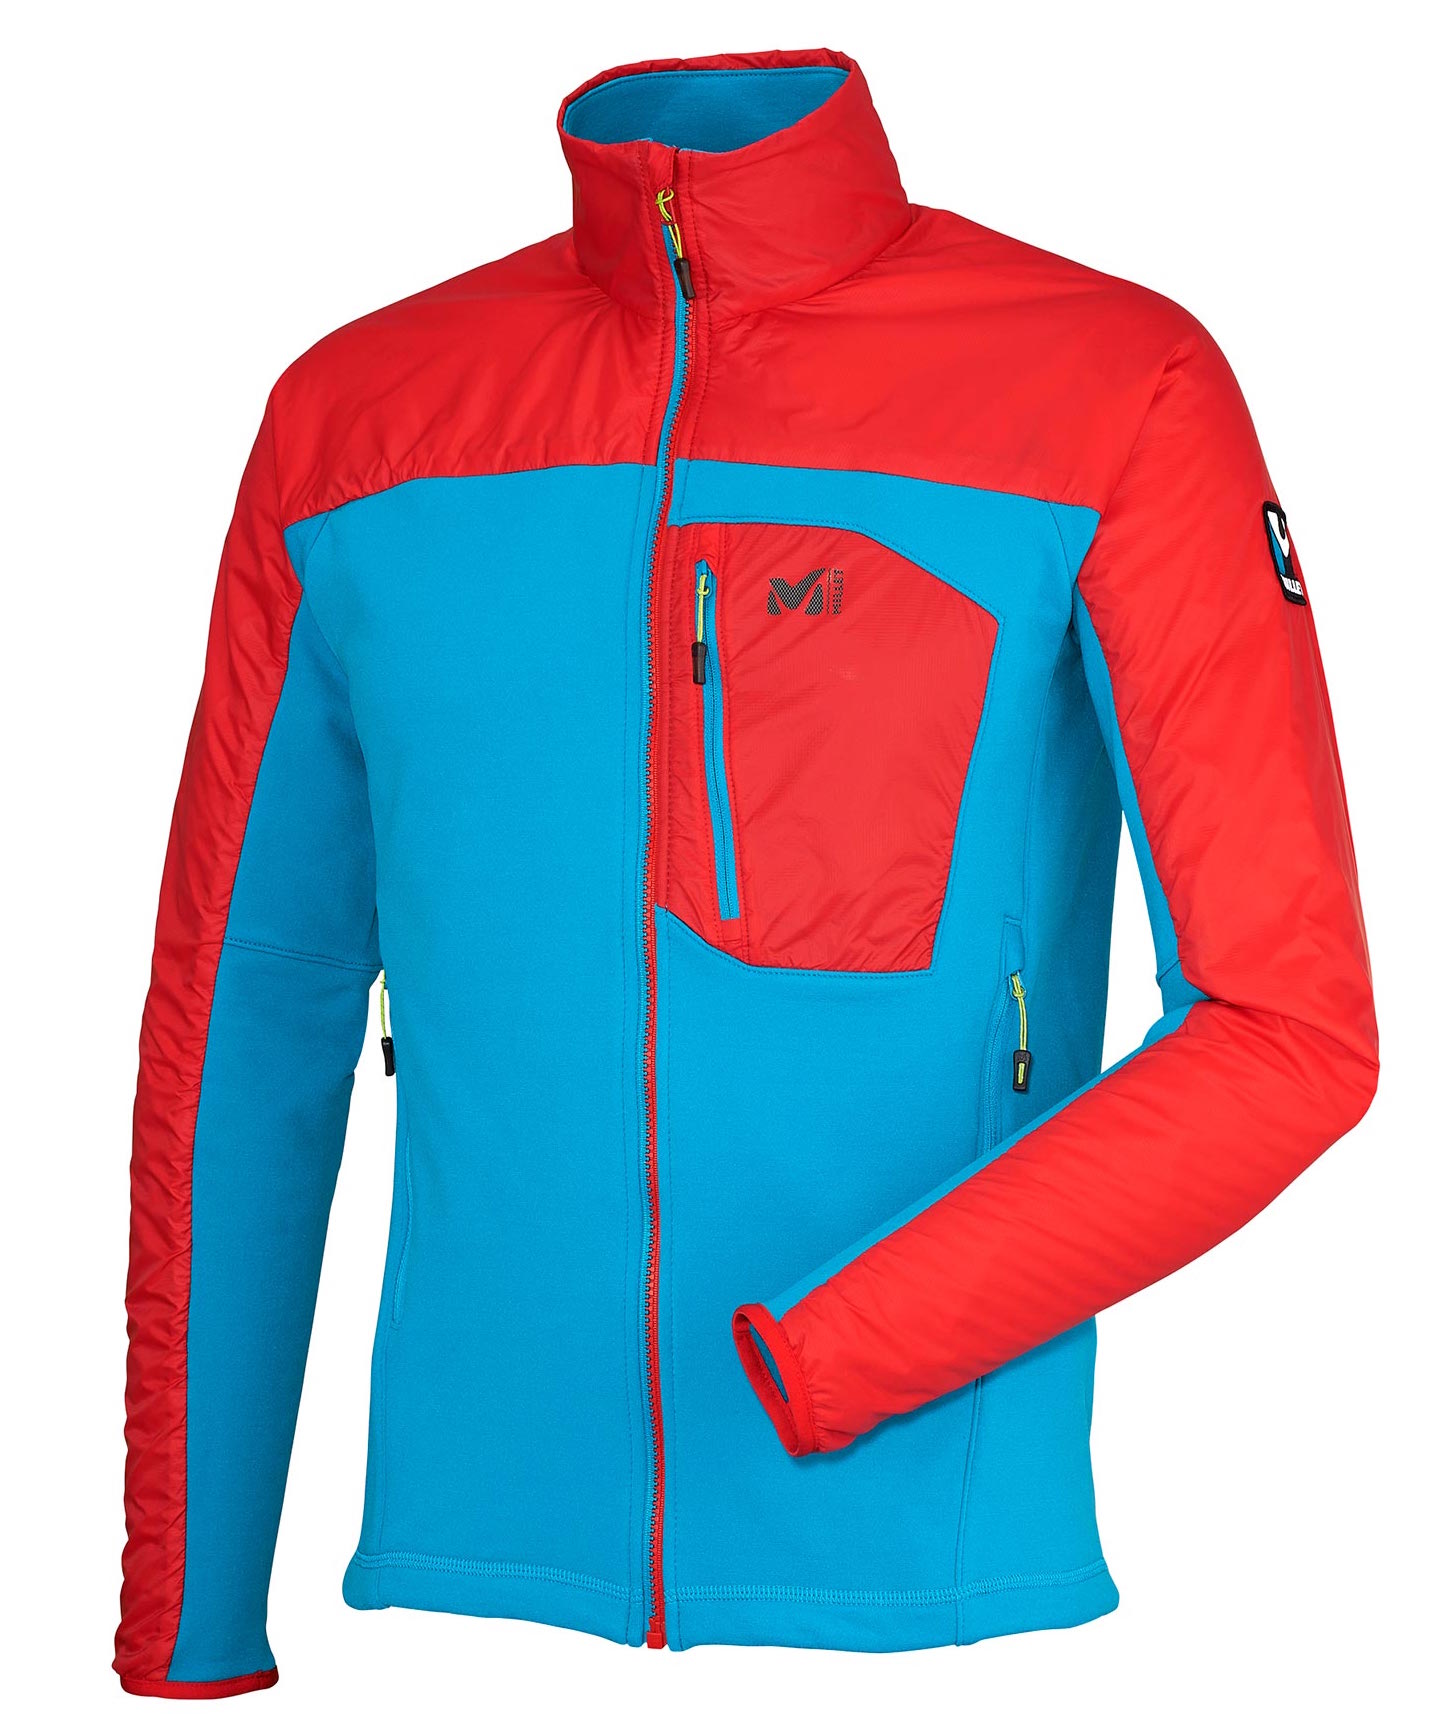 Millet - St Moritz Jkt 2.0 M - Ski jacket - Men's